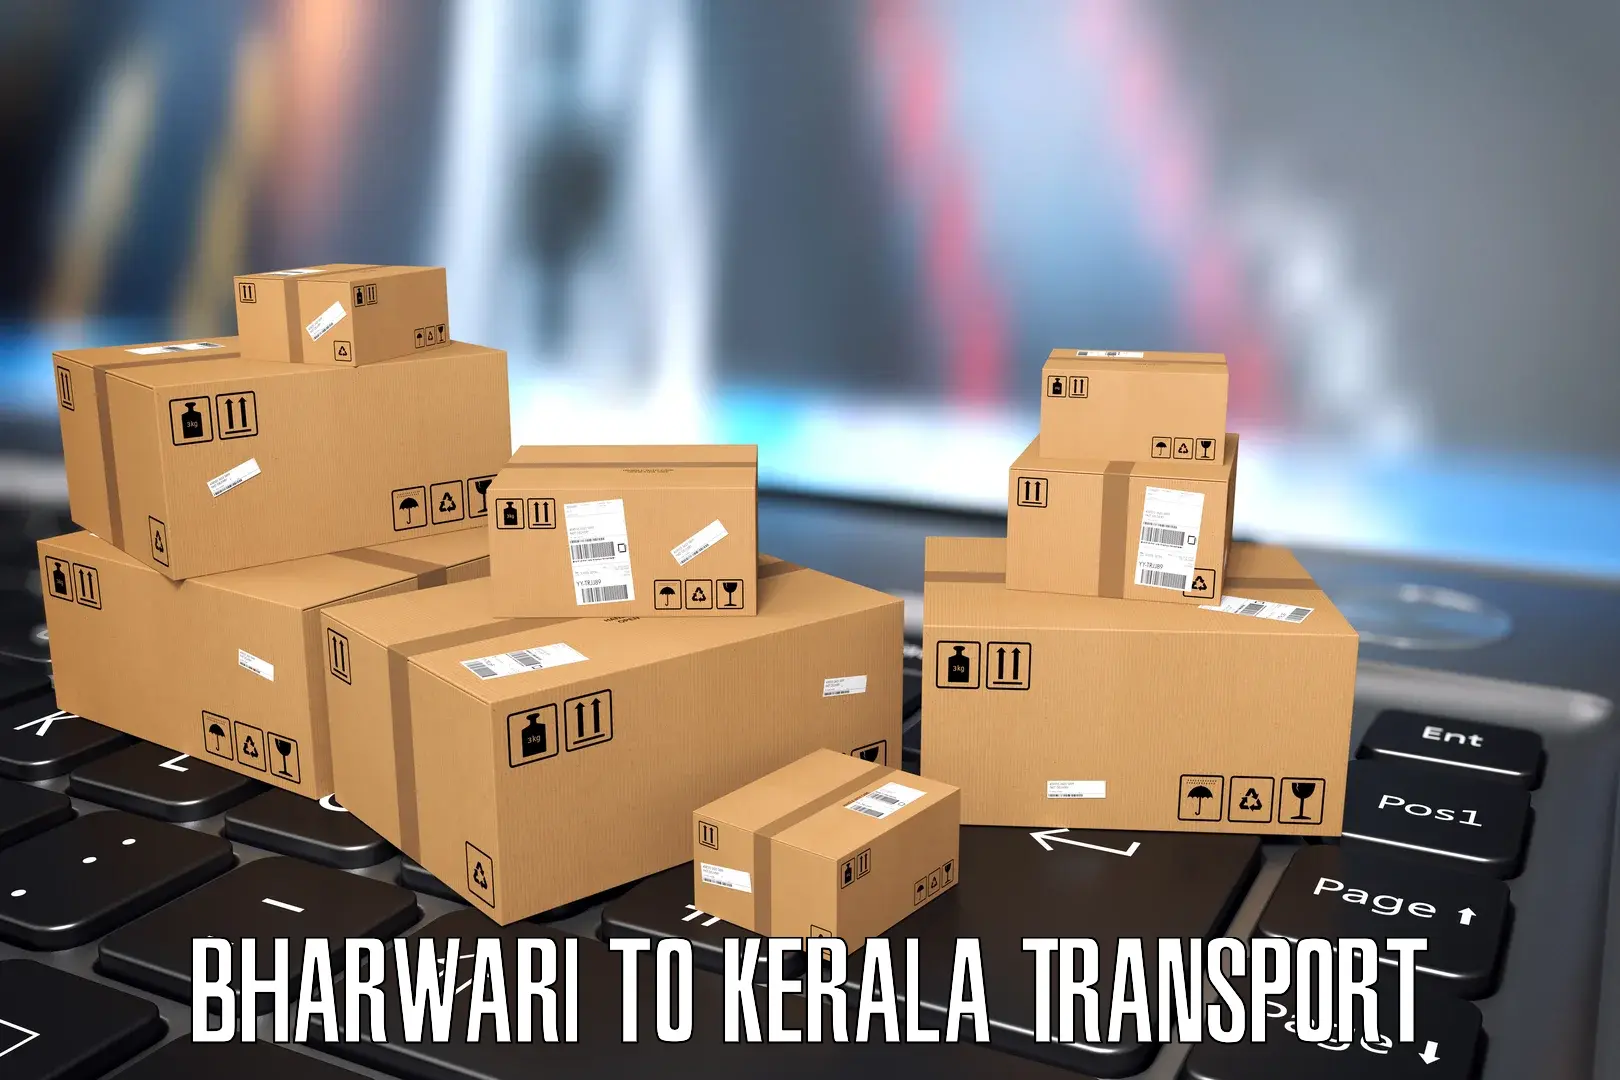 Daily transport service Bharwari to Cherthala